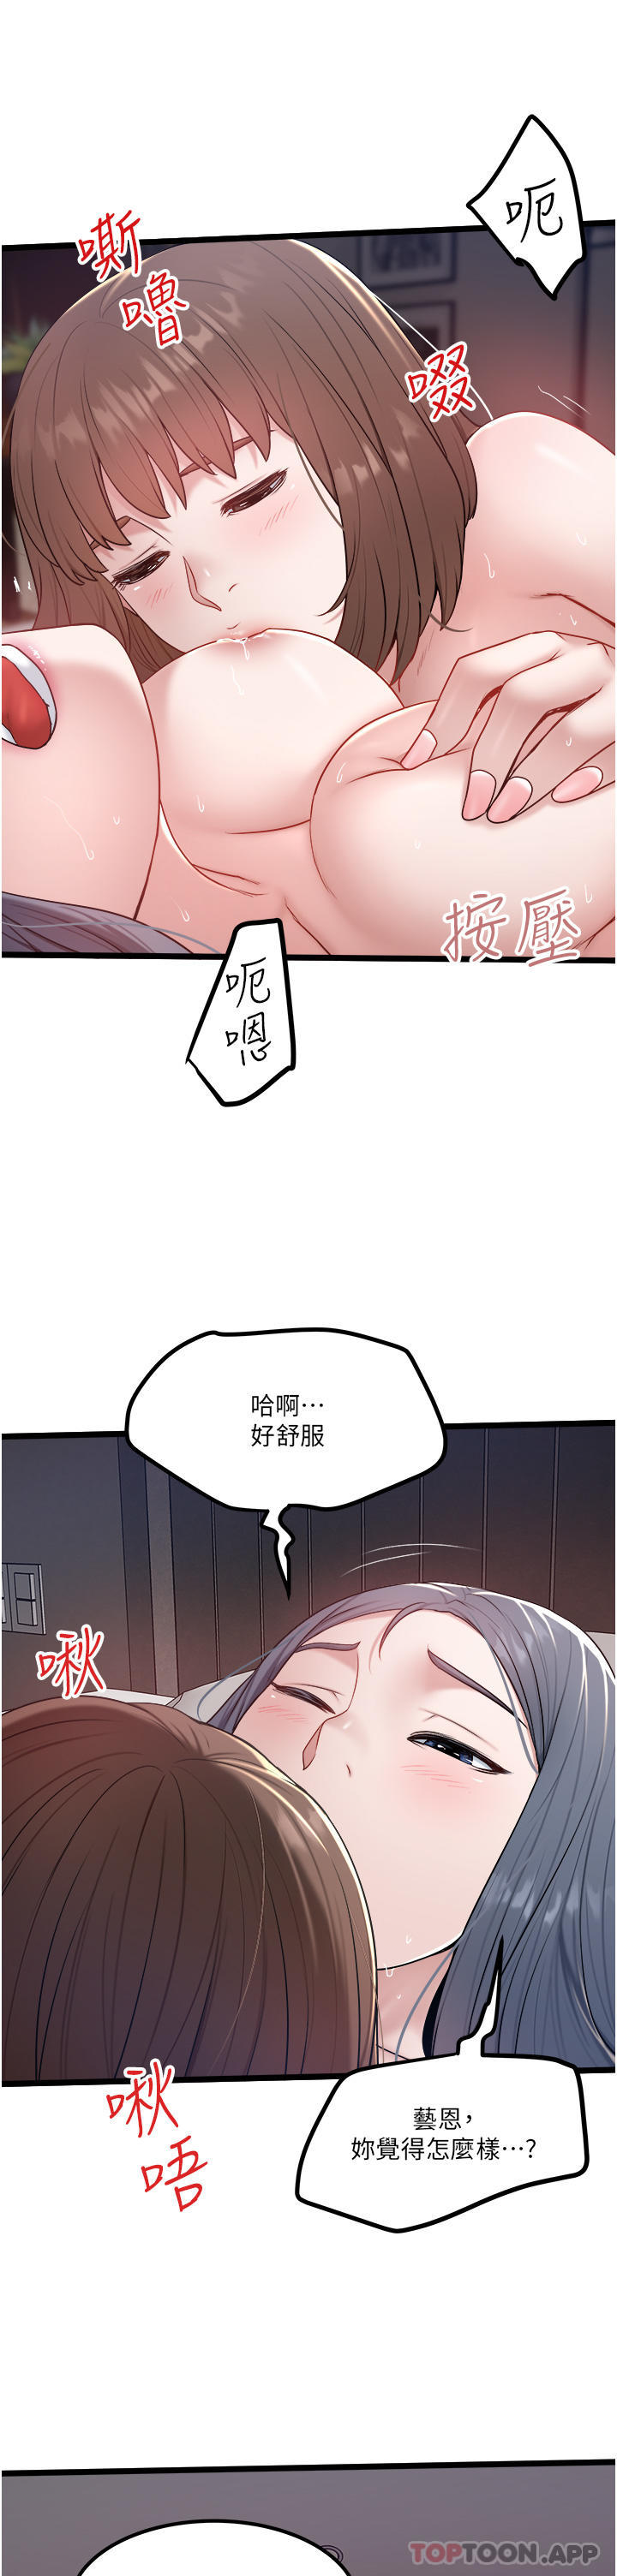 韩国污漫画 私人司機 第35话-身体性向测试 13